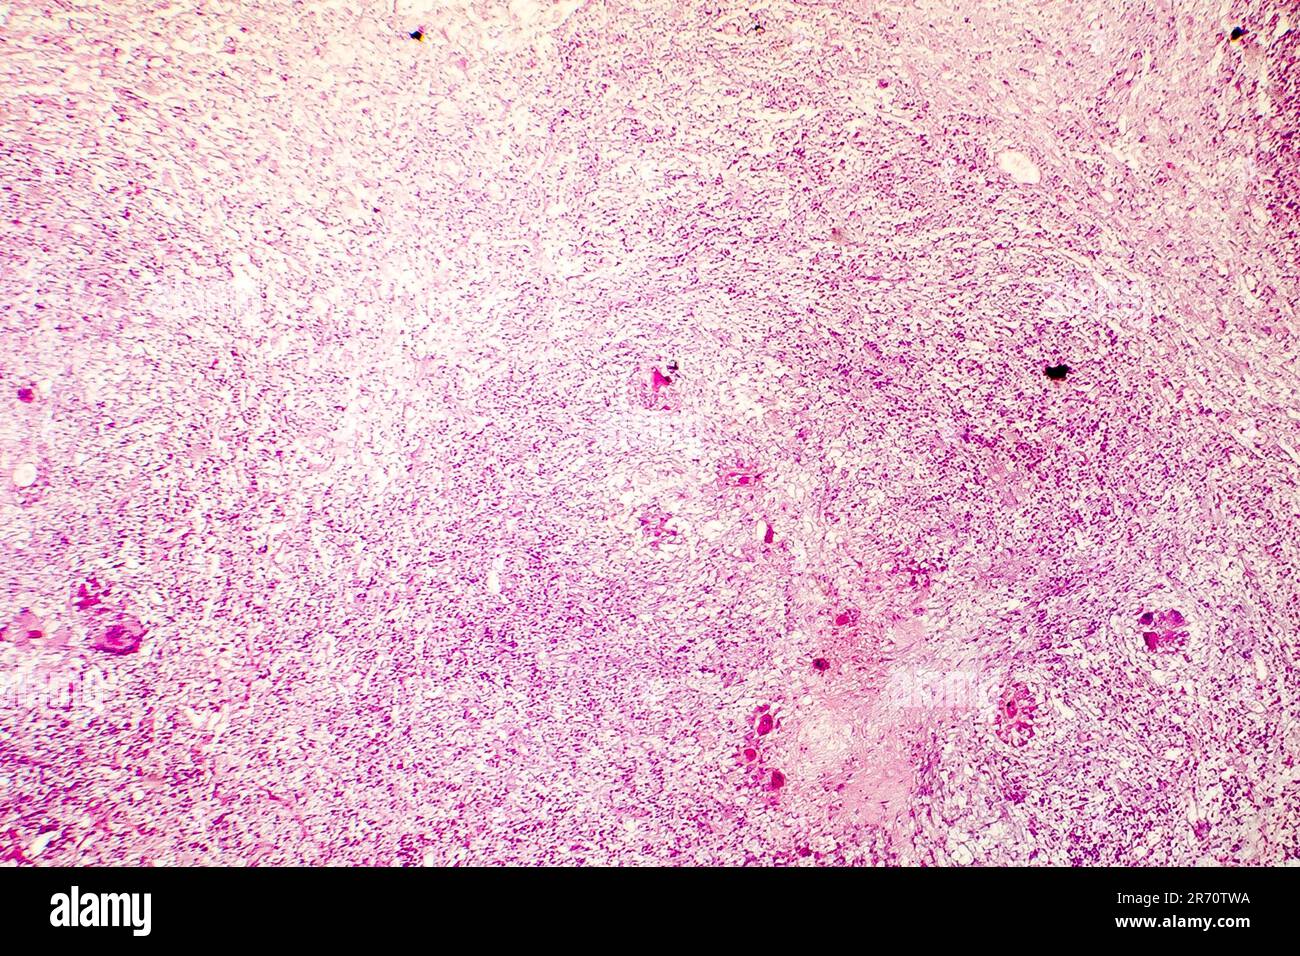 Necrosi liquefattiva del cervello umano, fotomicrografia leggera che mostra la perdita di contorni cellulari, accumulo di detriti cellulari, infiltratio macrofago Foto Stock